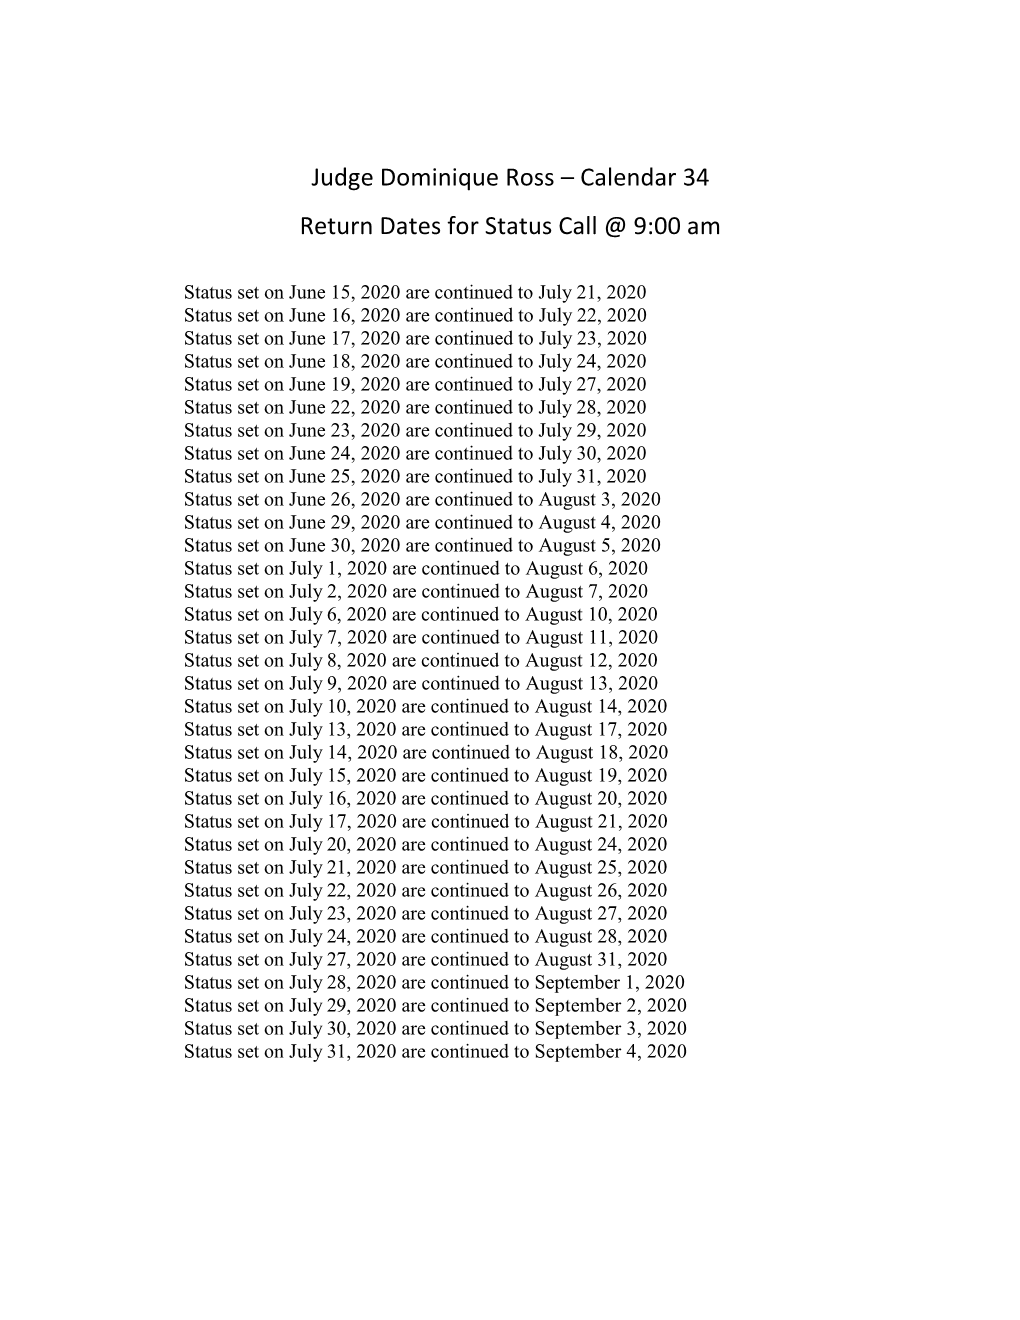 Judge Dominique Ross – Calendar 34 Return Dates for Status Call @ 9:00 Am